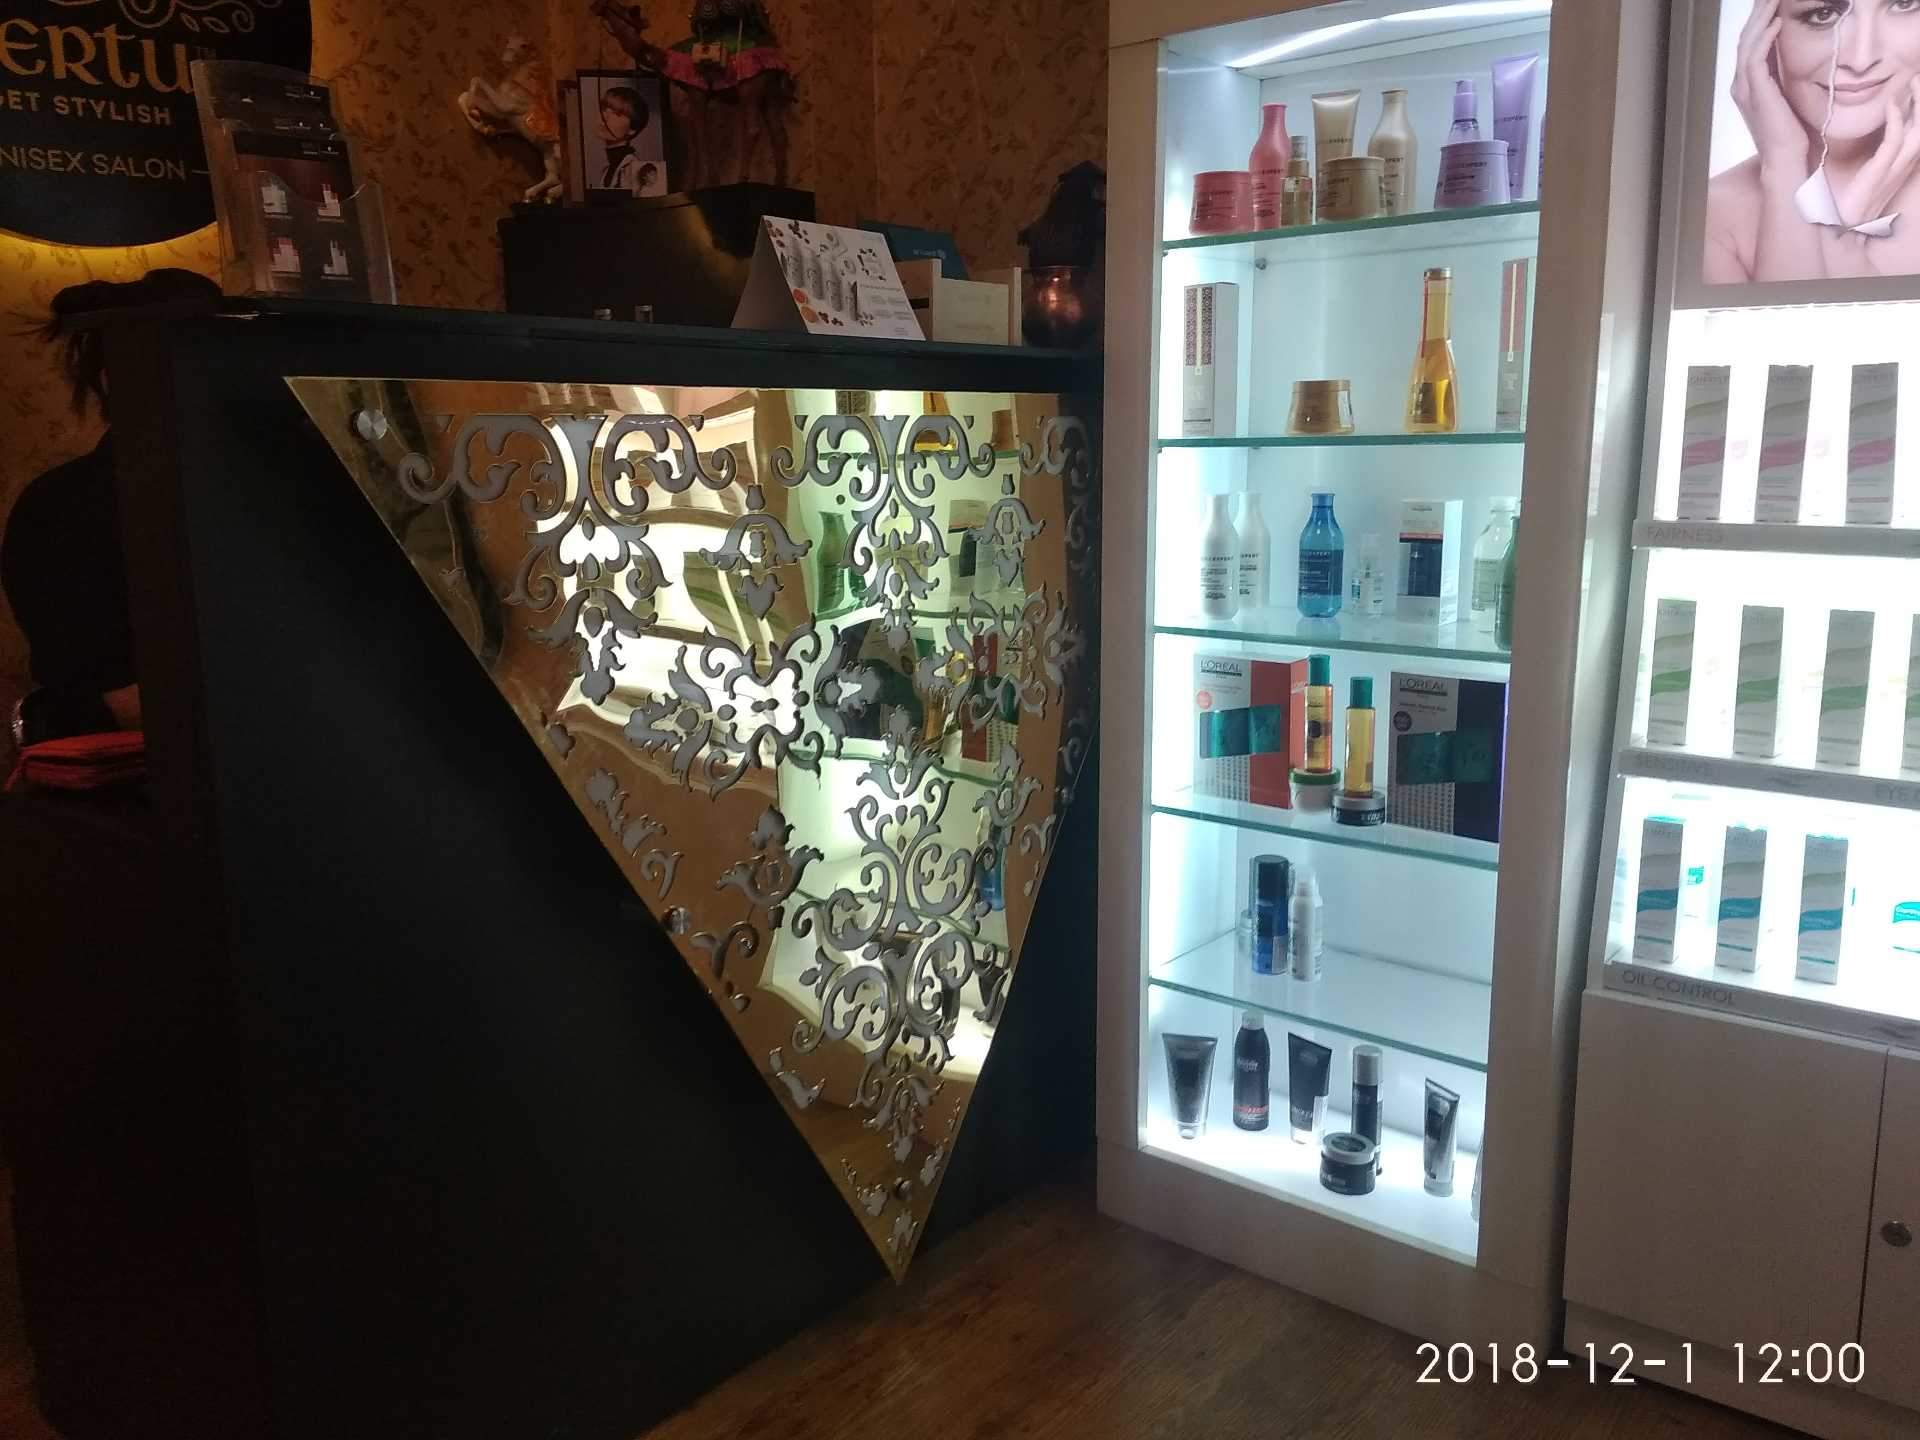 Vertu Salon Photos, Padle, Mumbai - Display Case , HD Wallpaper & Backgrounds